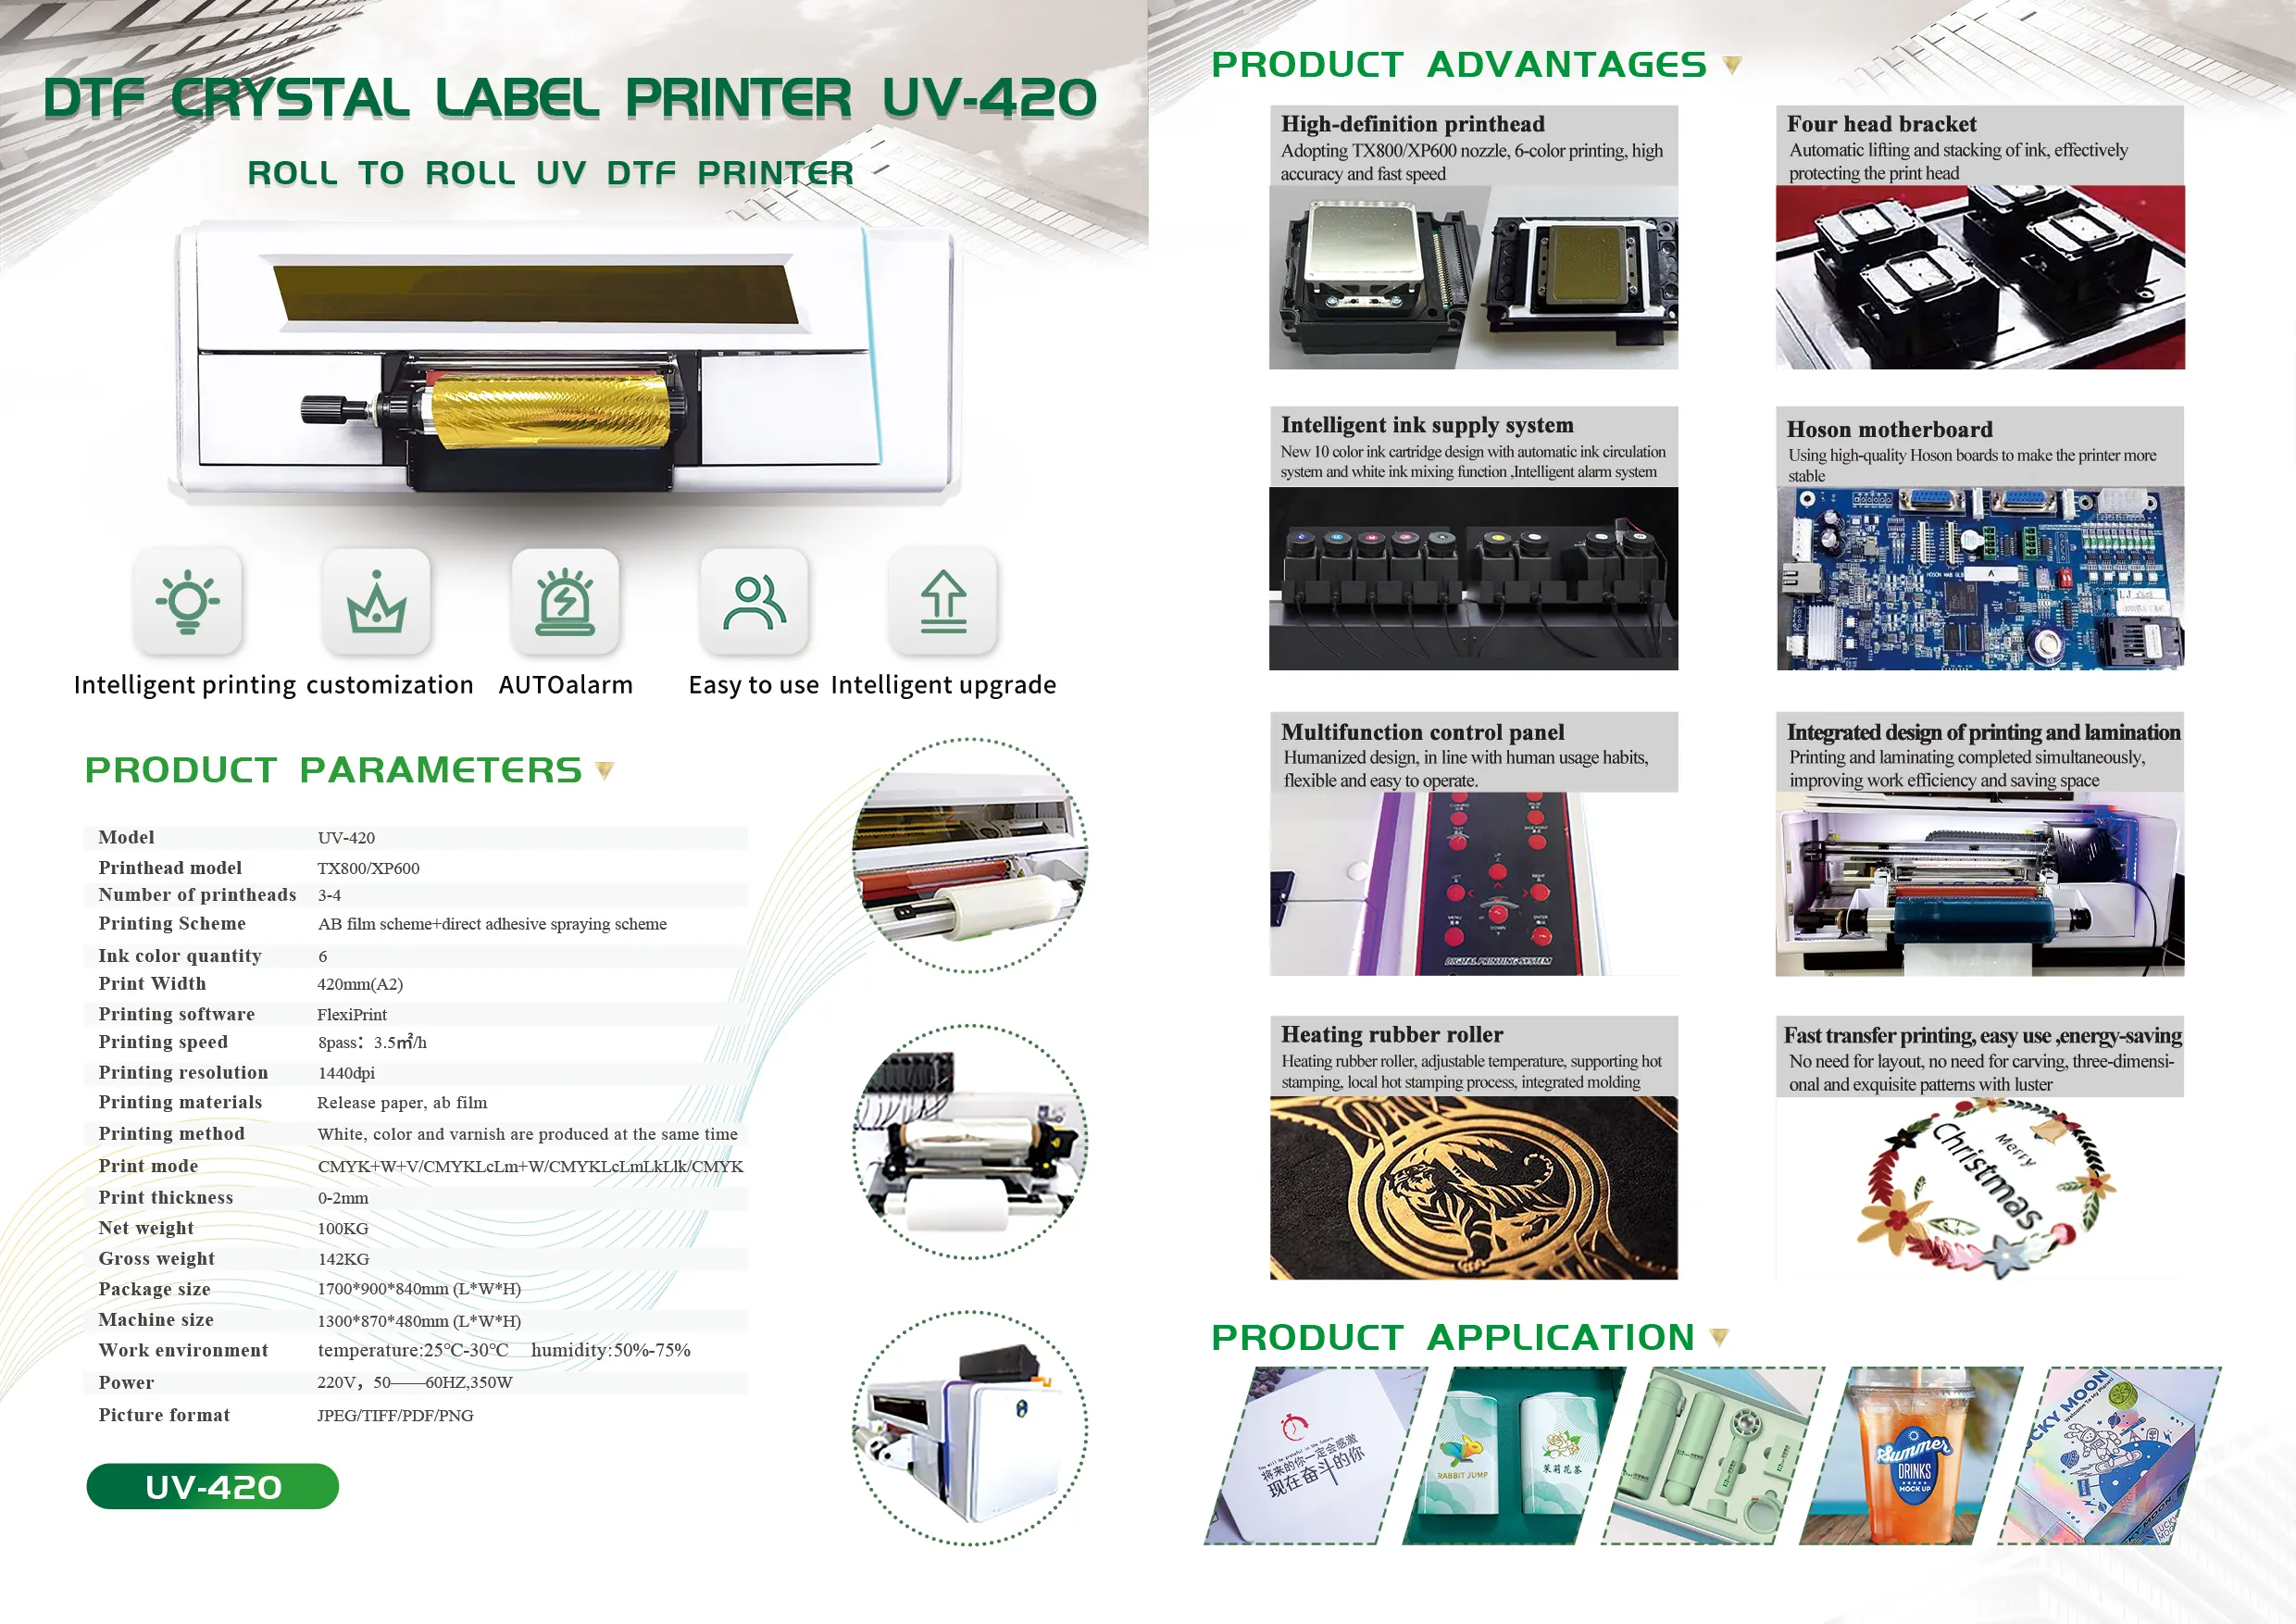 Impressora UV Dtf de rolo de 30 cm para impressão de adesivos com cabeça dupla Xp600 Impressora Dtf A3 rolo a rolo Impressora Dtf UV